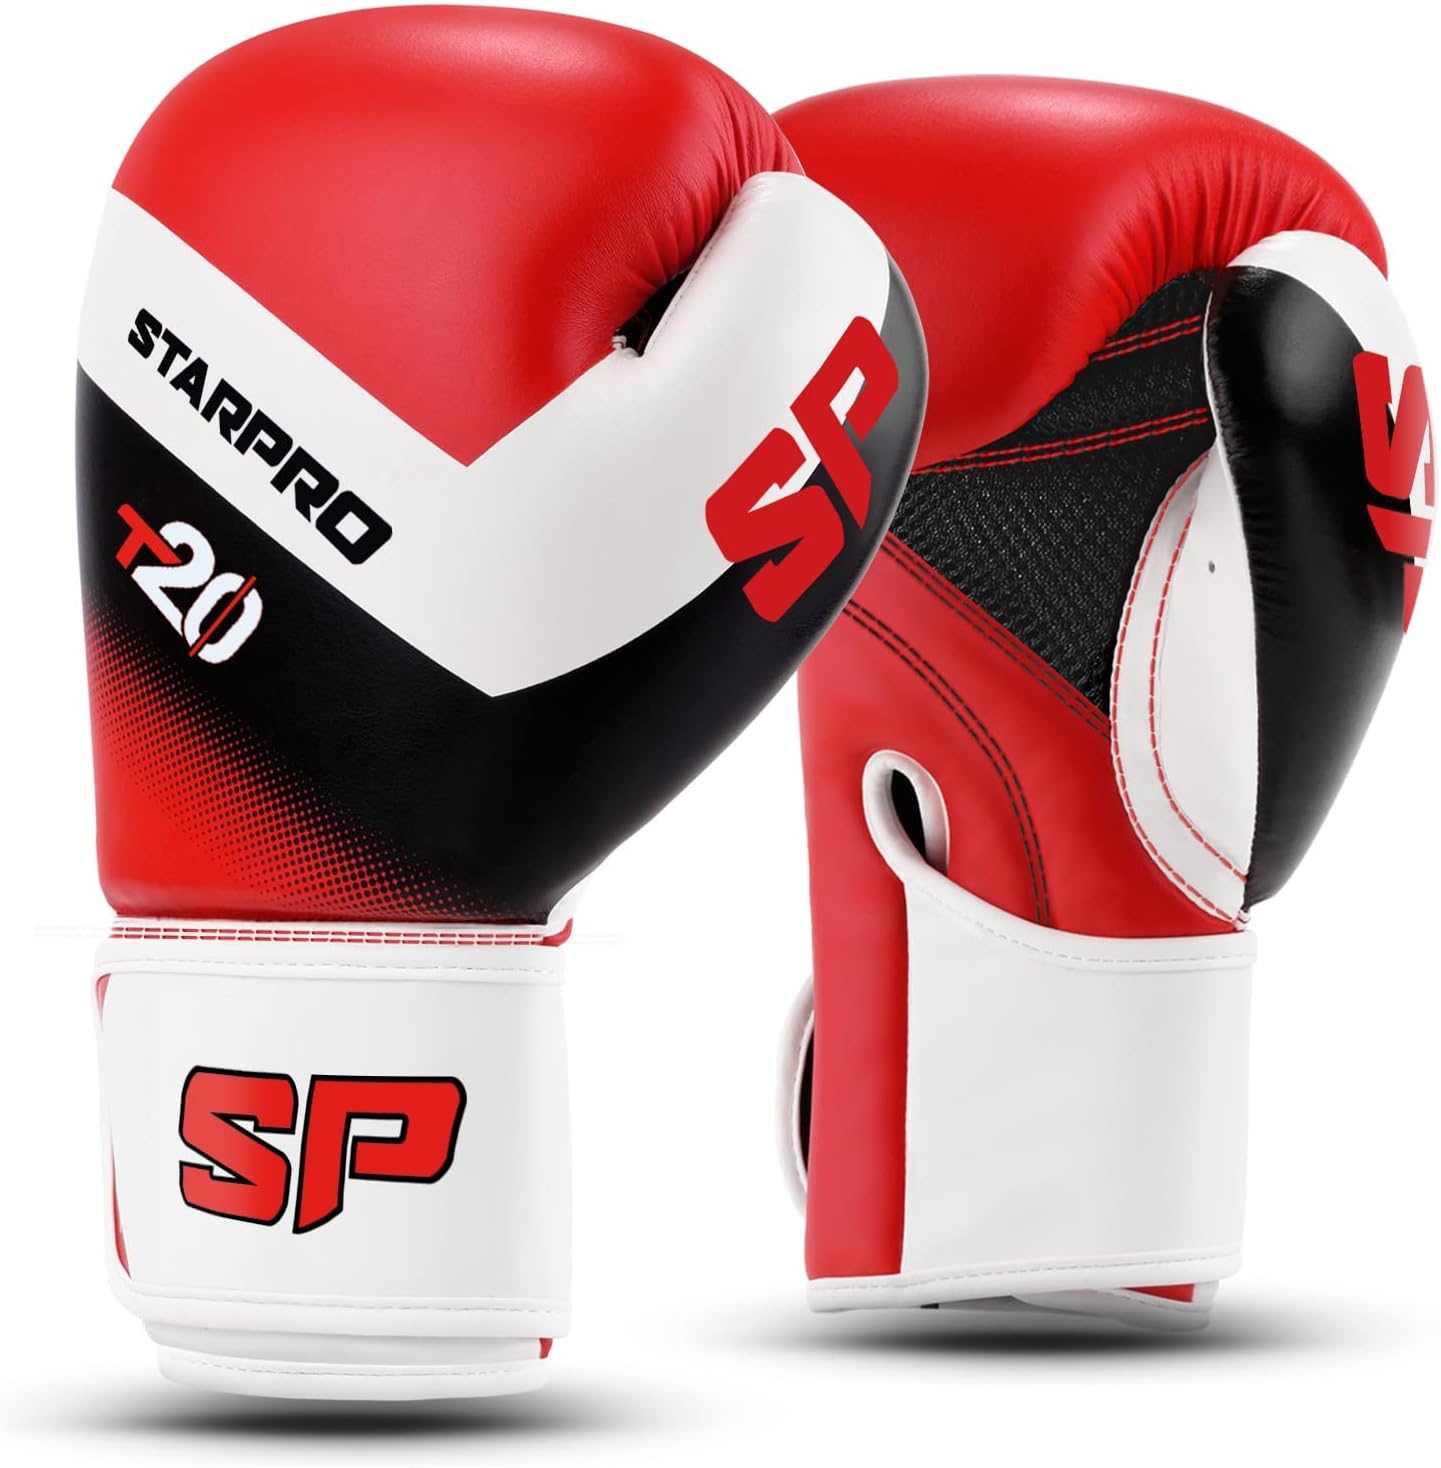 Starpro, T20 Kinder Boxhandschuhe 4-6-8 Jahre Red/White, Junior Equipment, Kids